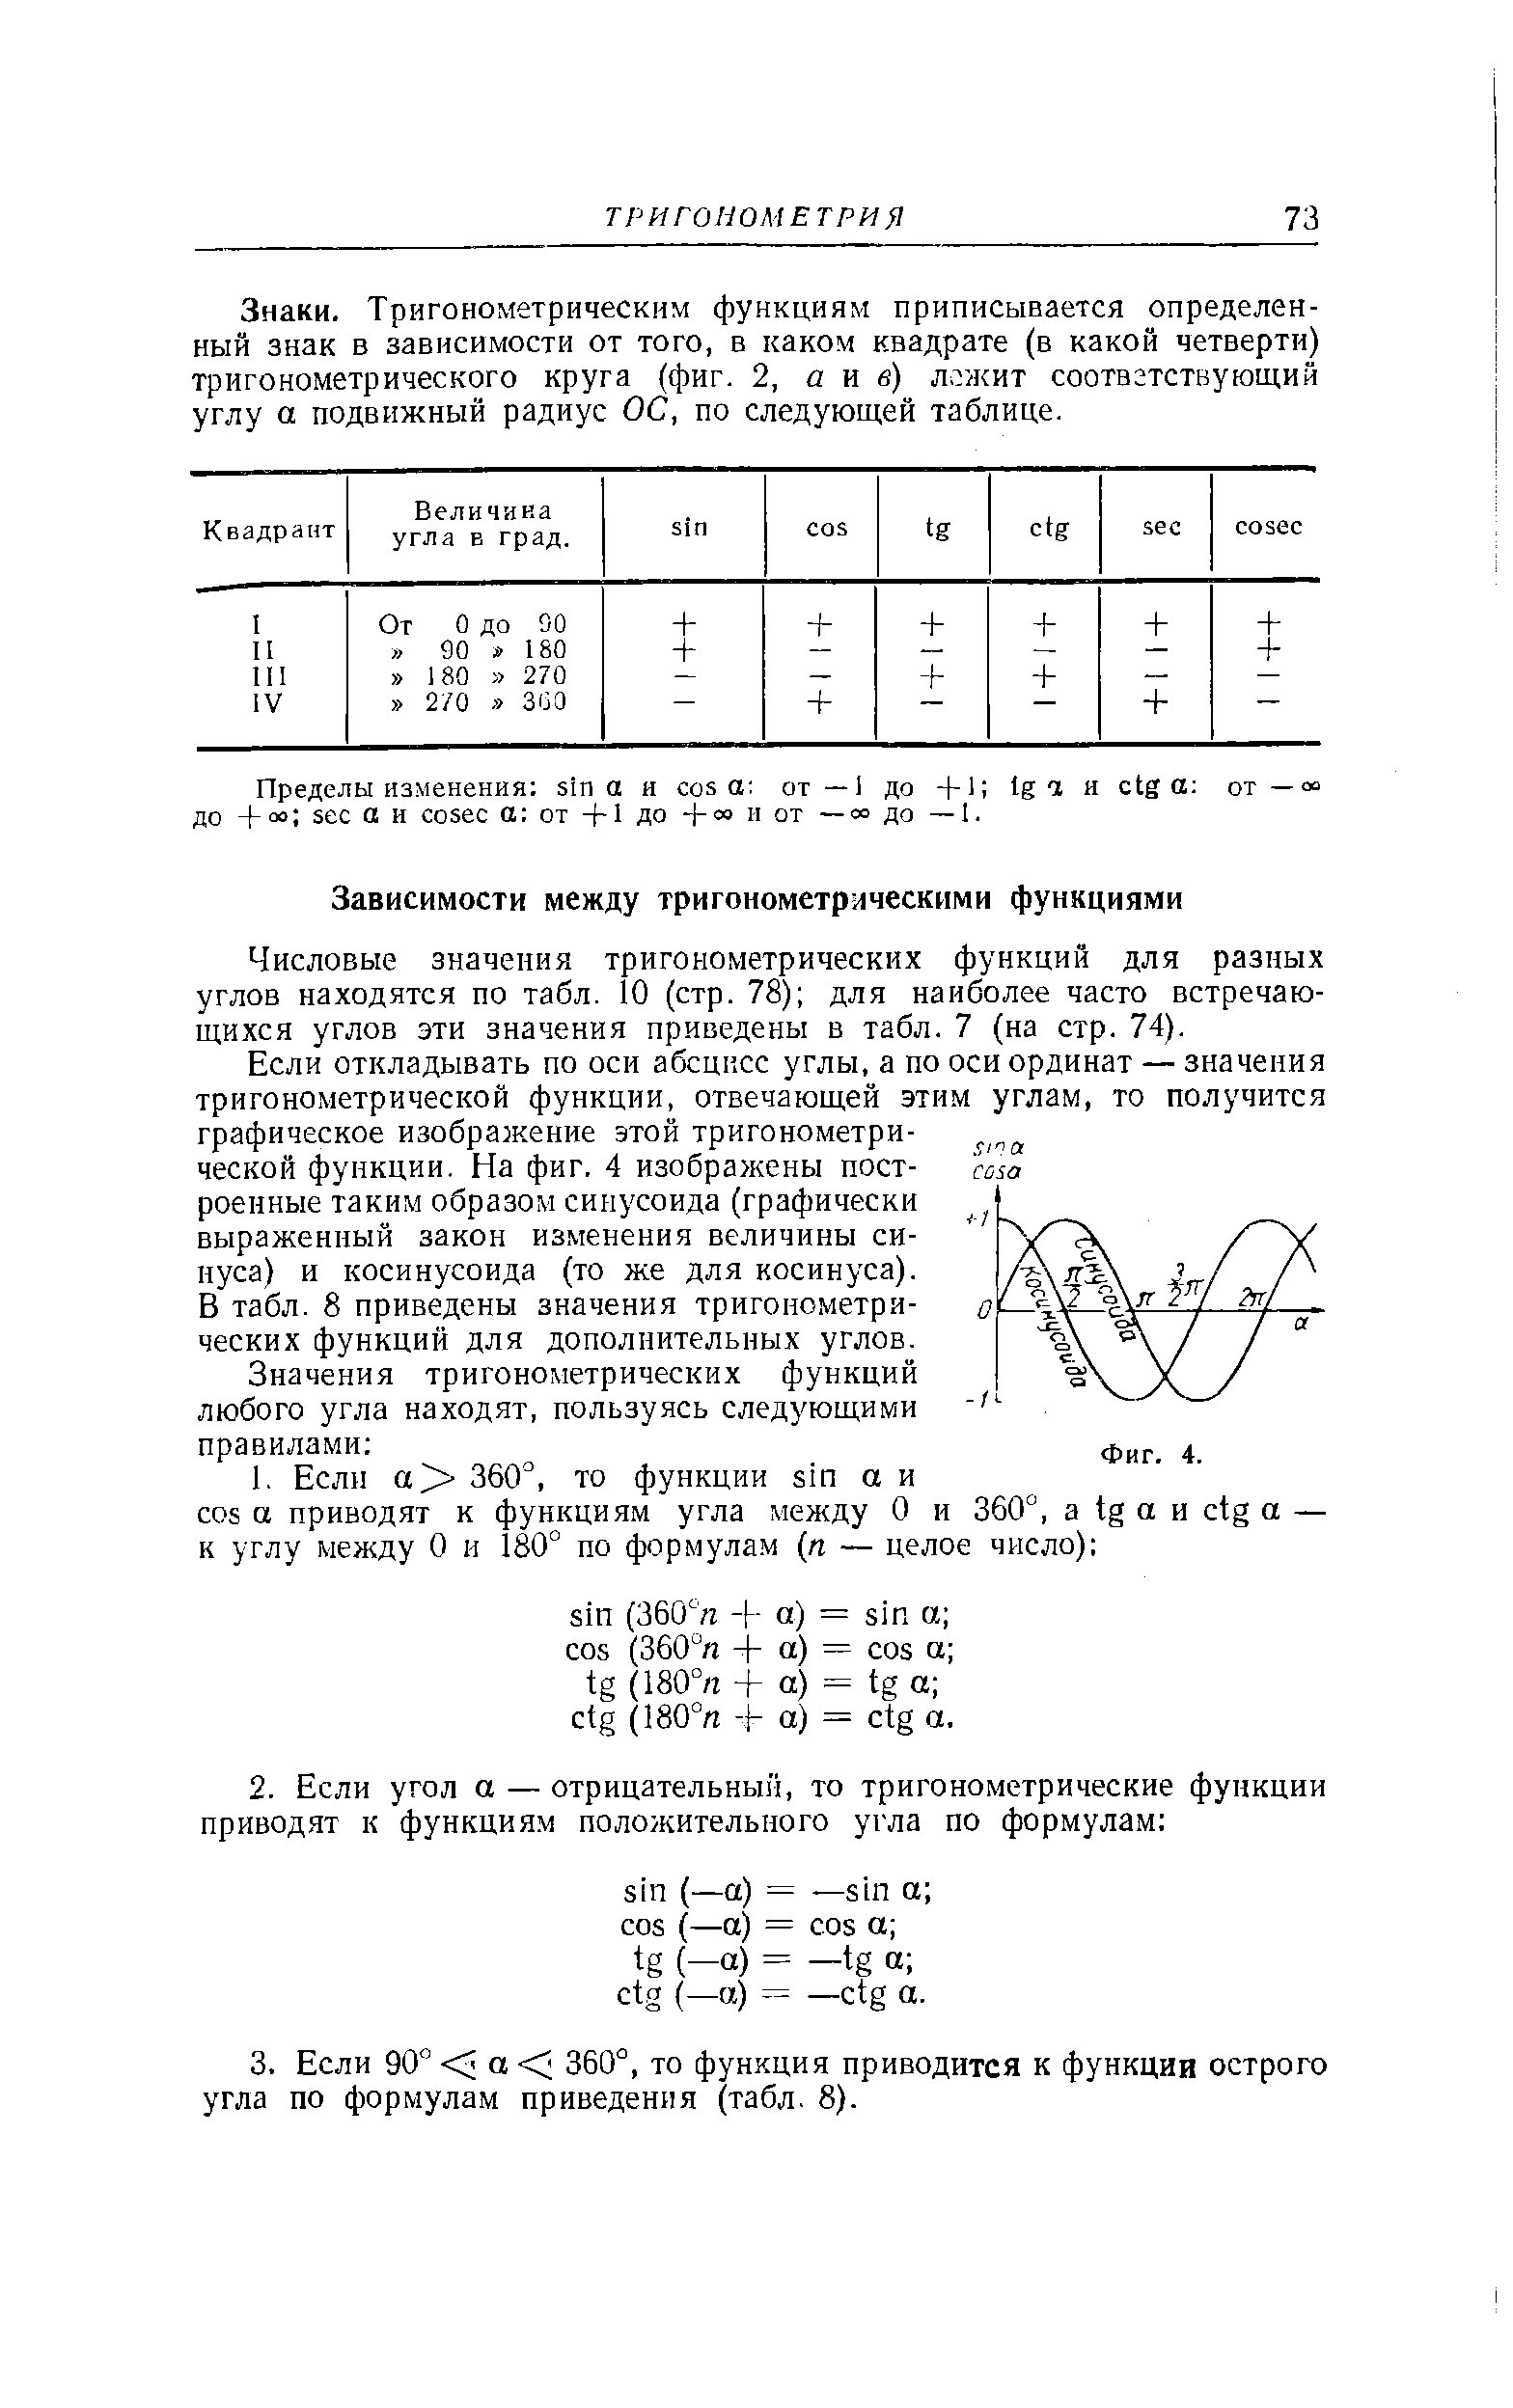 Числовые значения тригонометрических функций для разных углов находятся по табл. 10 (стр. 78) для наиболее часто встречающихся углов эти значения приведены в табл. 7 (на стр. 74).
